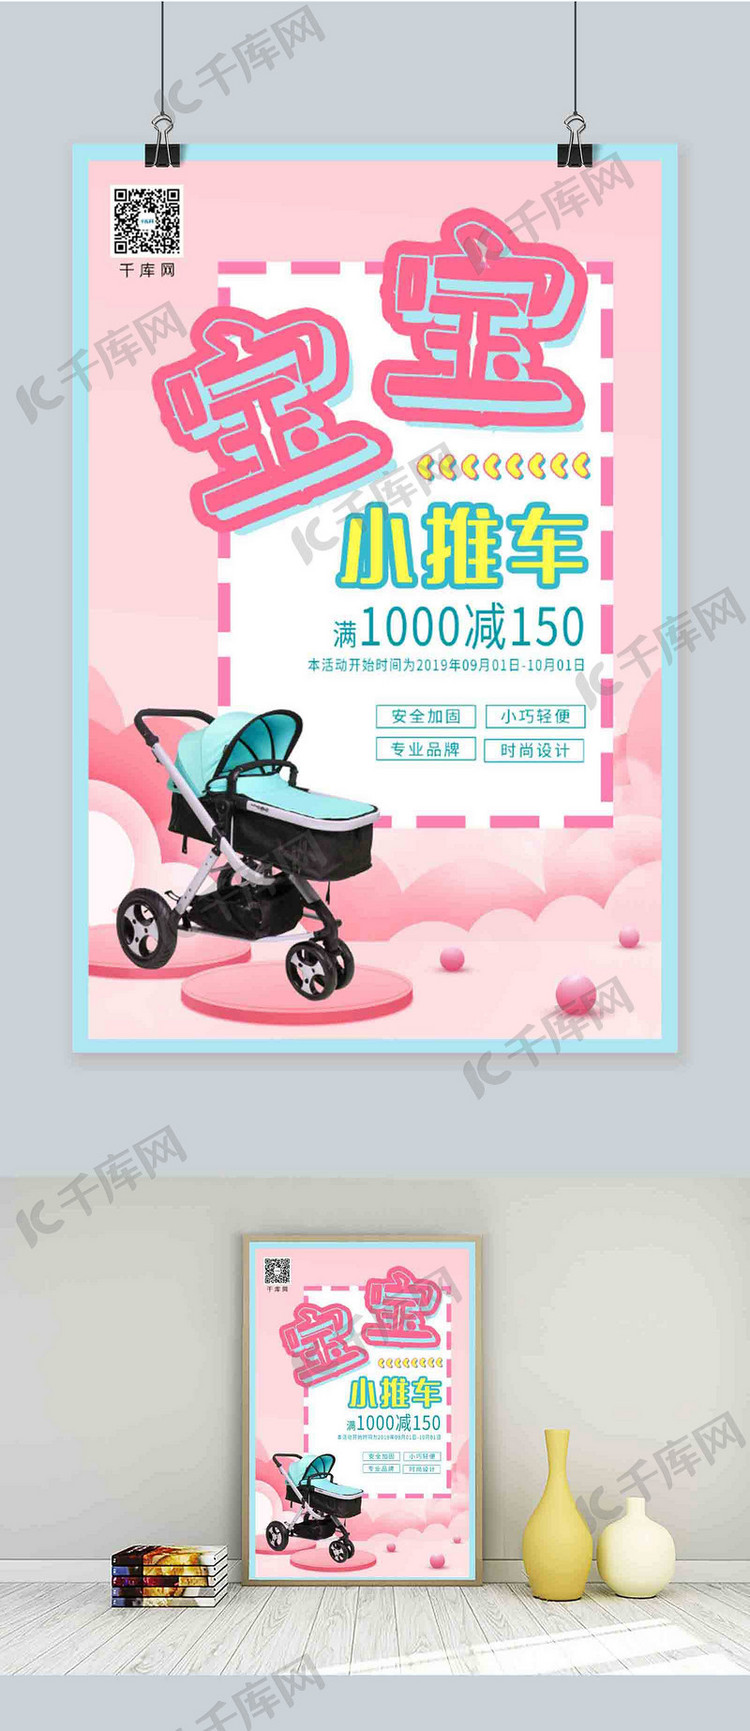 浅粉色时尚个性风格宝宝推车广告海报